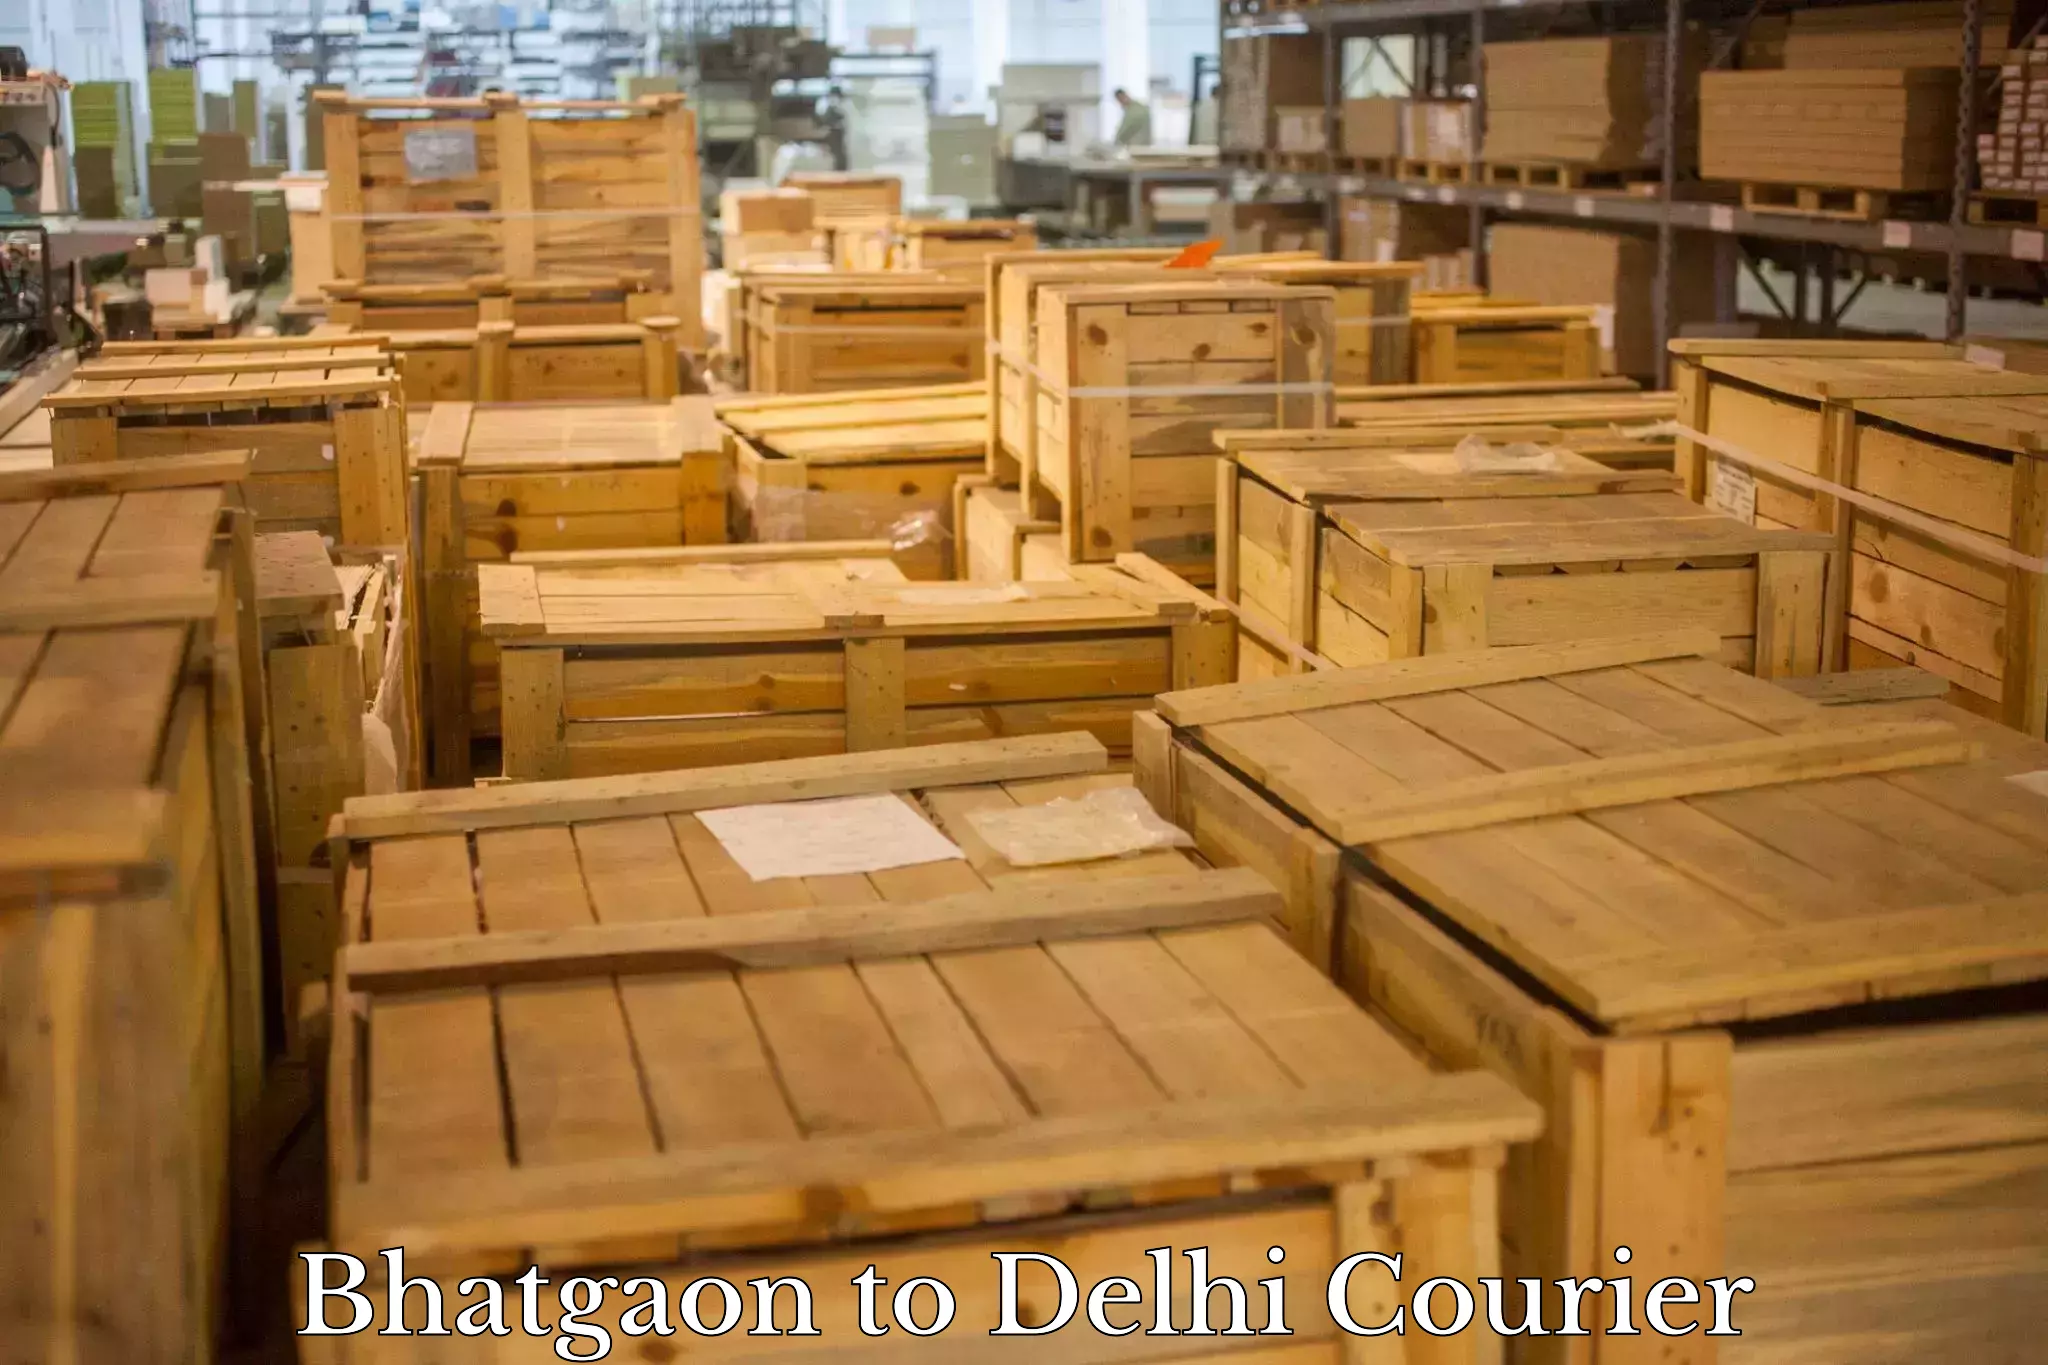 Efficient parcel service Bhatgaon to IIT Delhi